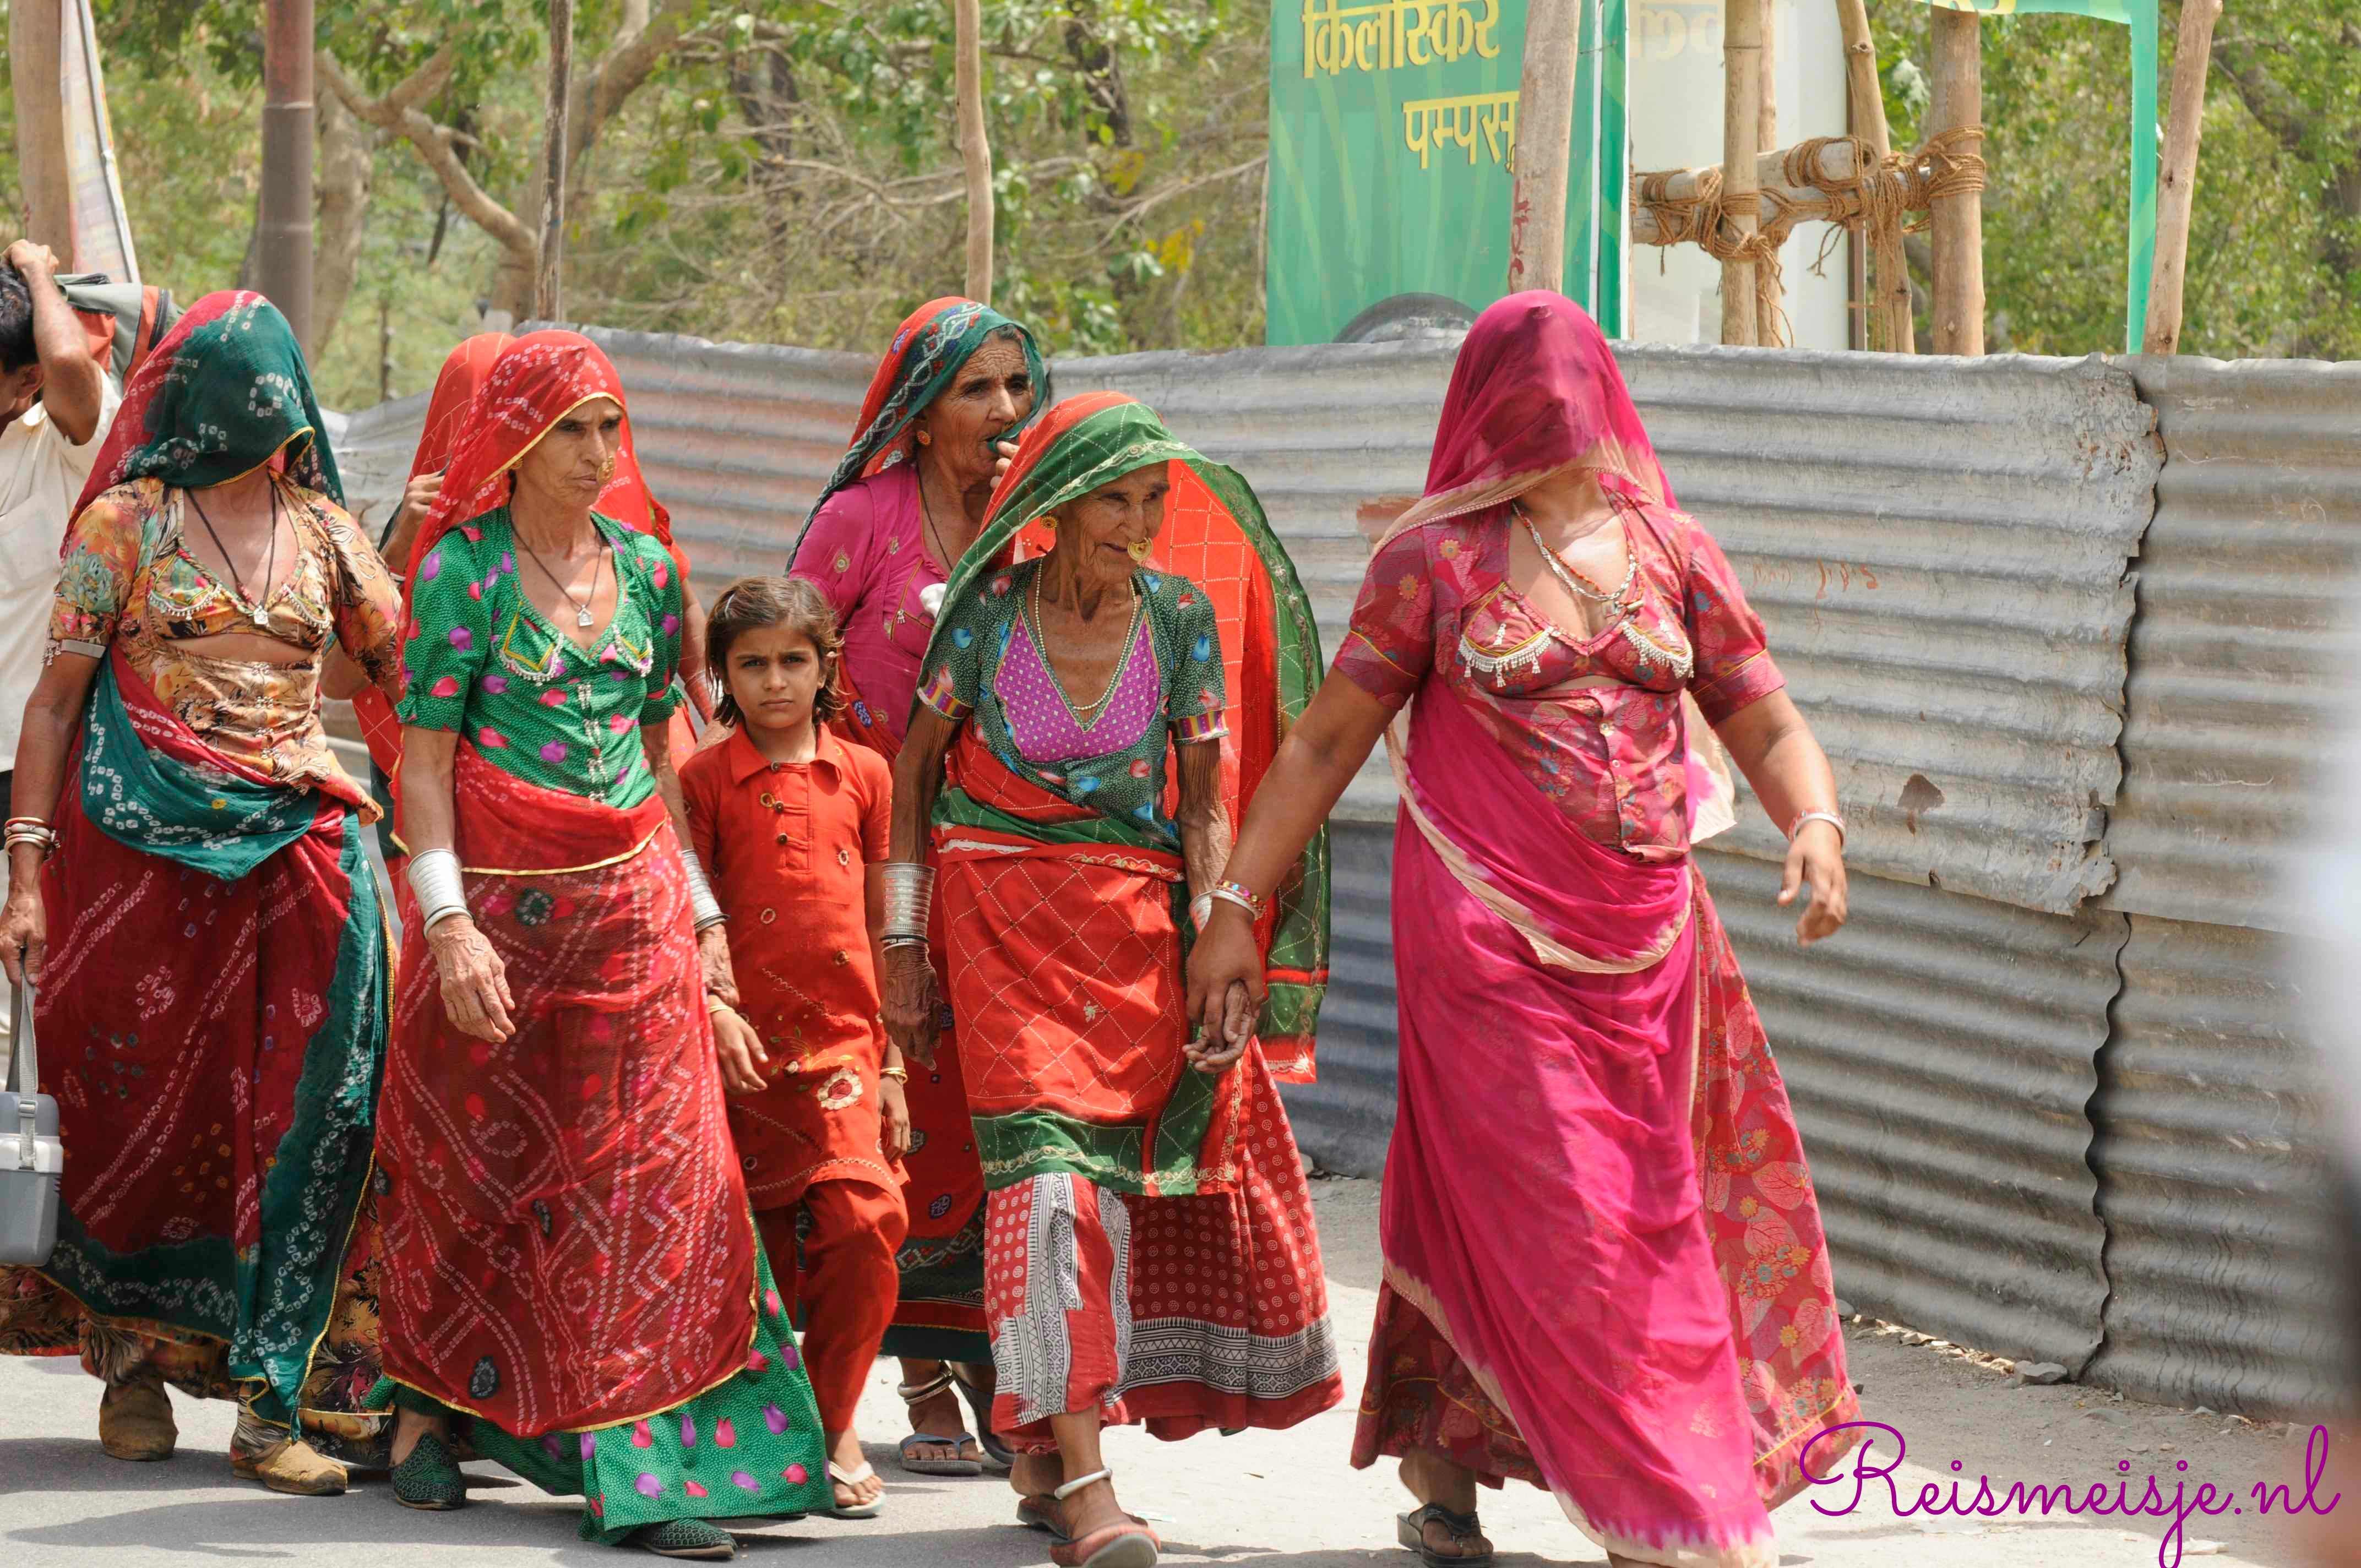 licentie Vrijgekomen porselein Tips om als vrouw alleen door India te reizen » Reismeisje